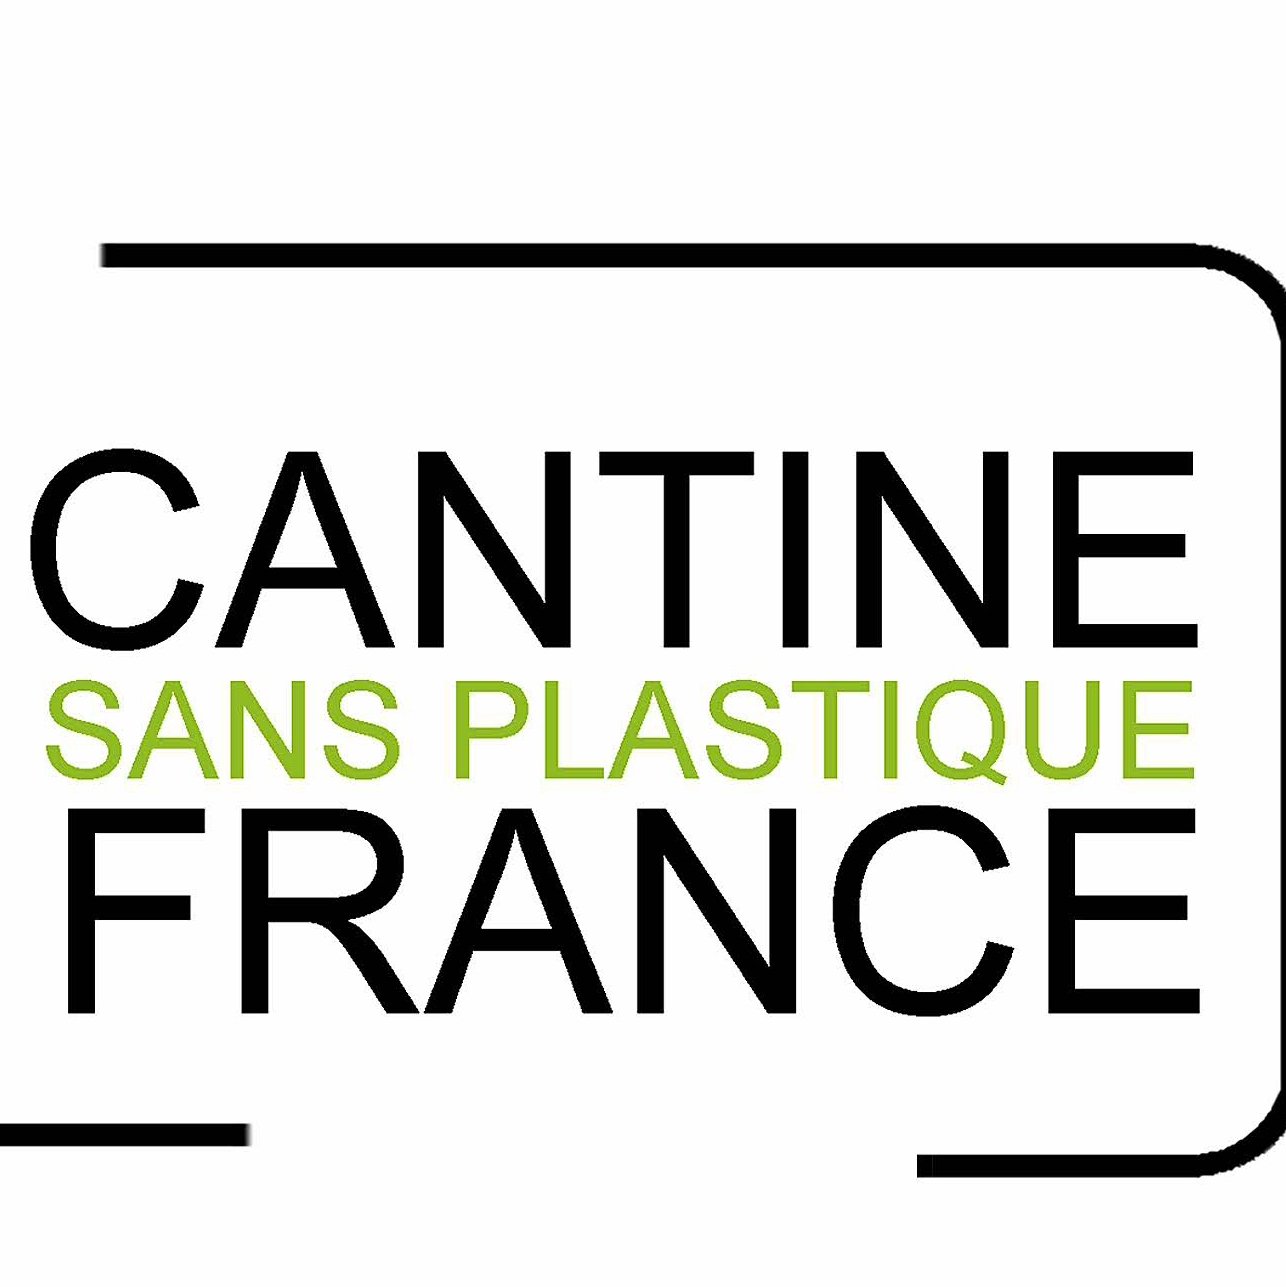 Association Cantine sans plastique France